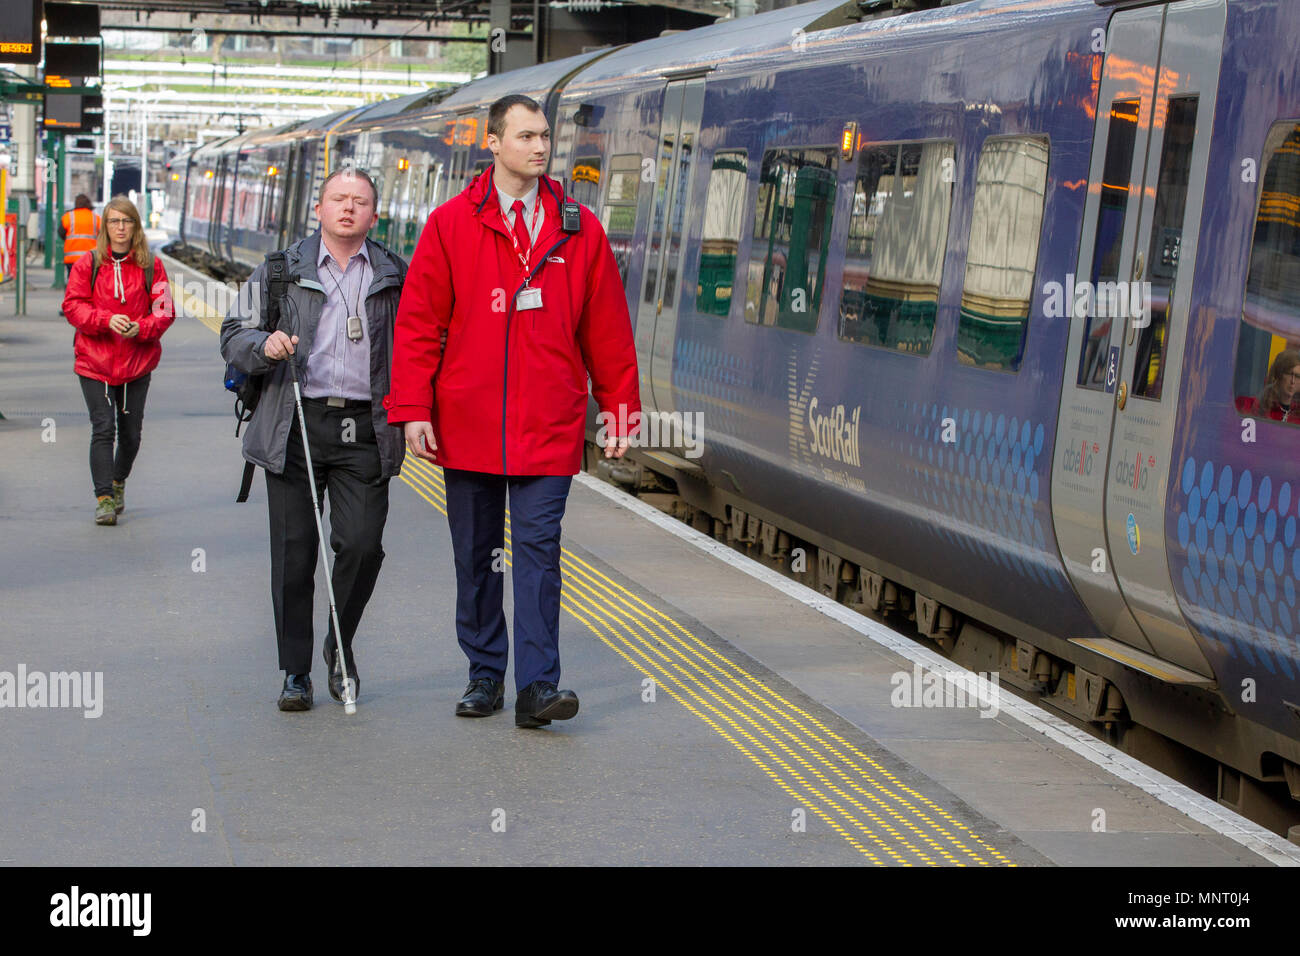 blind passenger using rail transport Stock Photo